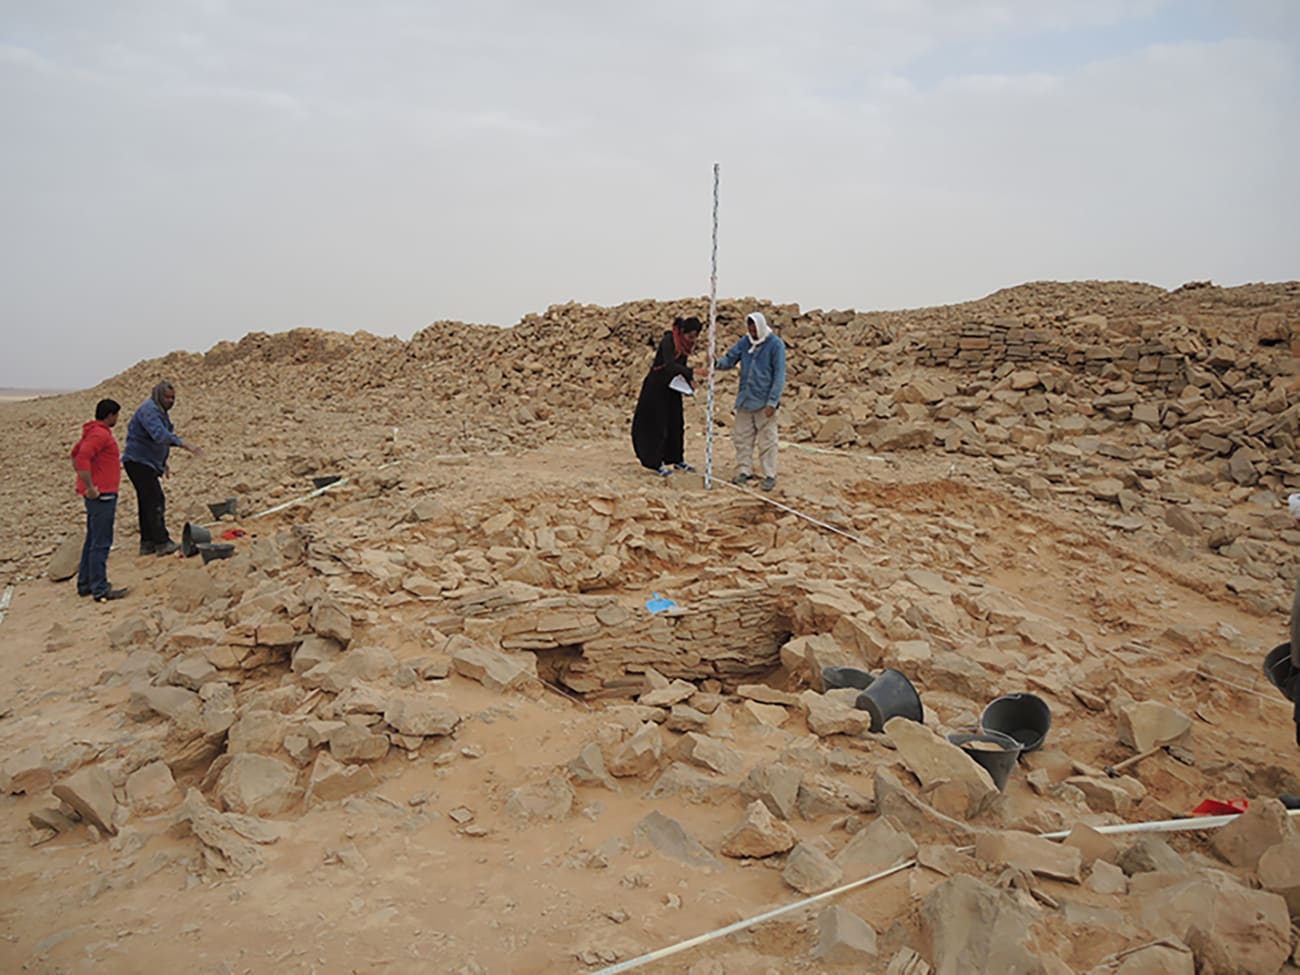 اكتشاف هيكل صخري على شكل مثلث بالسعودية يحتضن بقايا بشرية.. ويظن الباحثون أنها استخدمت لهذا الغرض